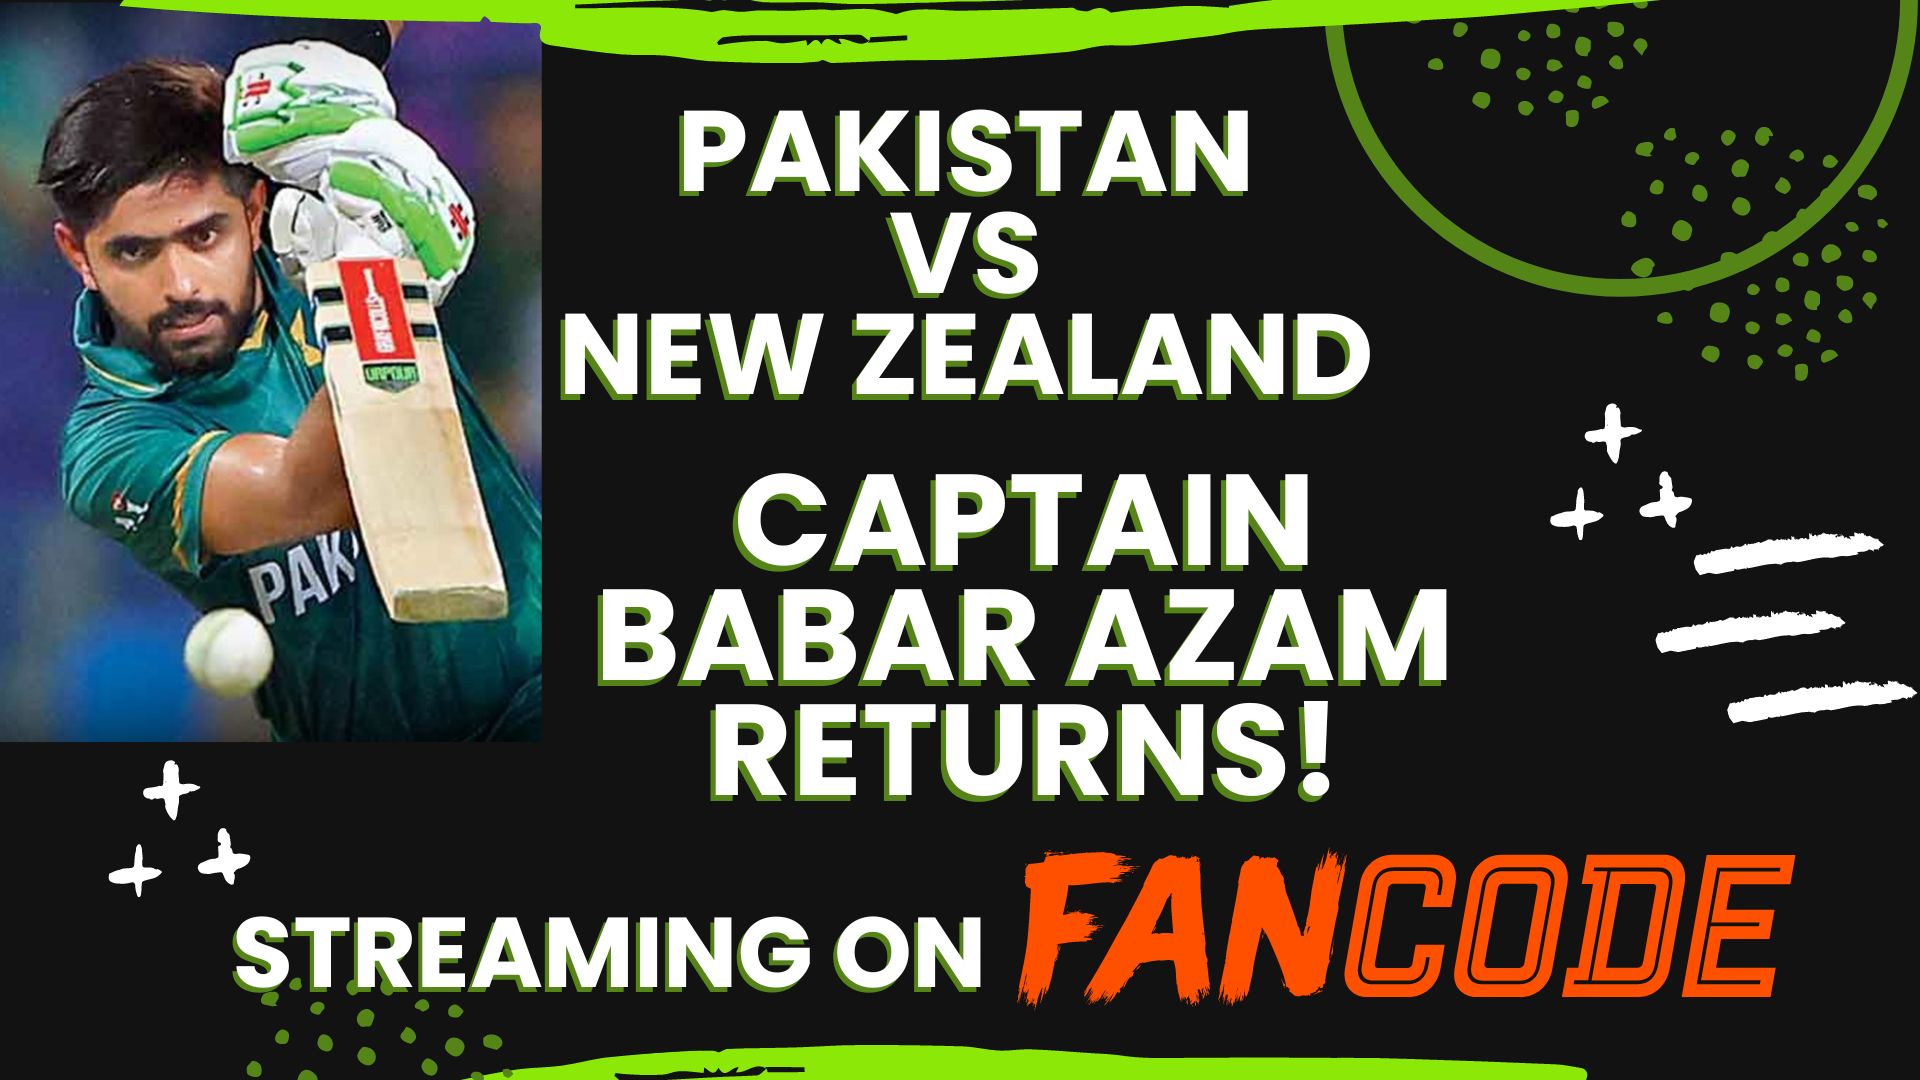 Babar Azam returns as Pakistan captain